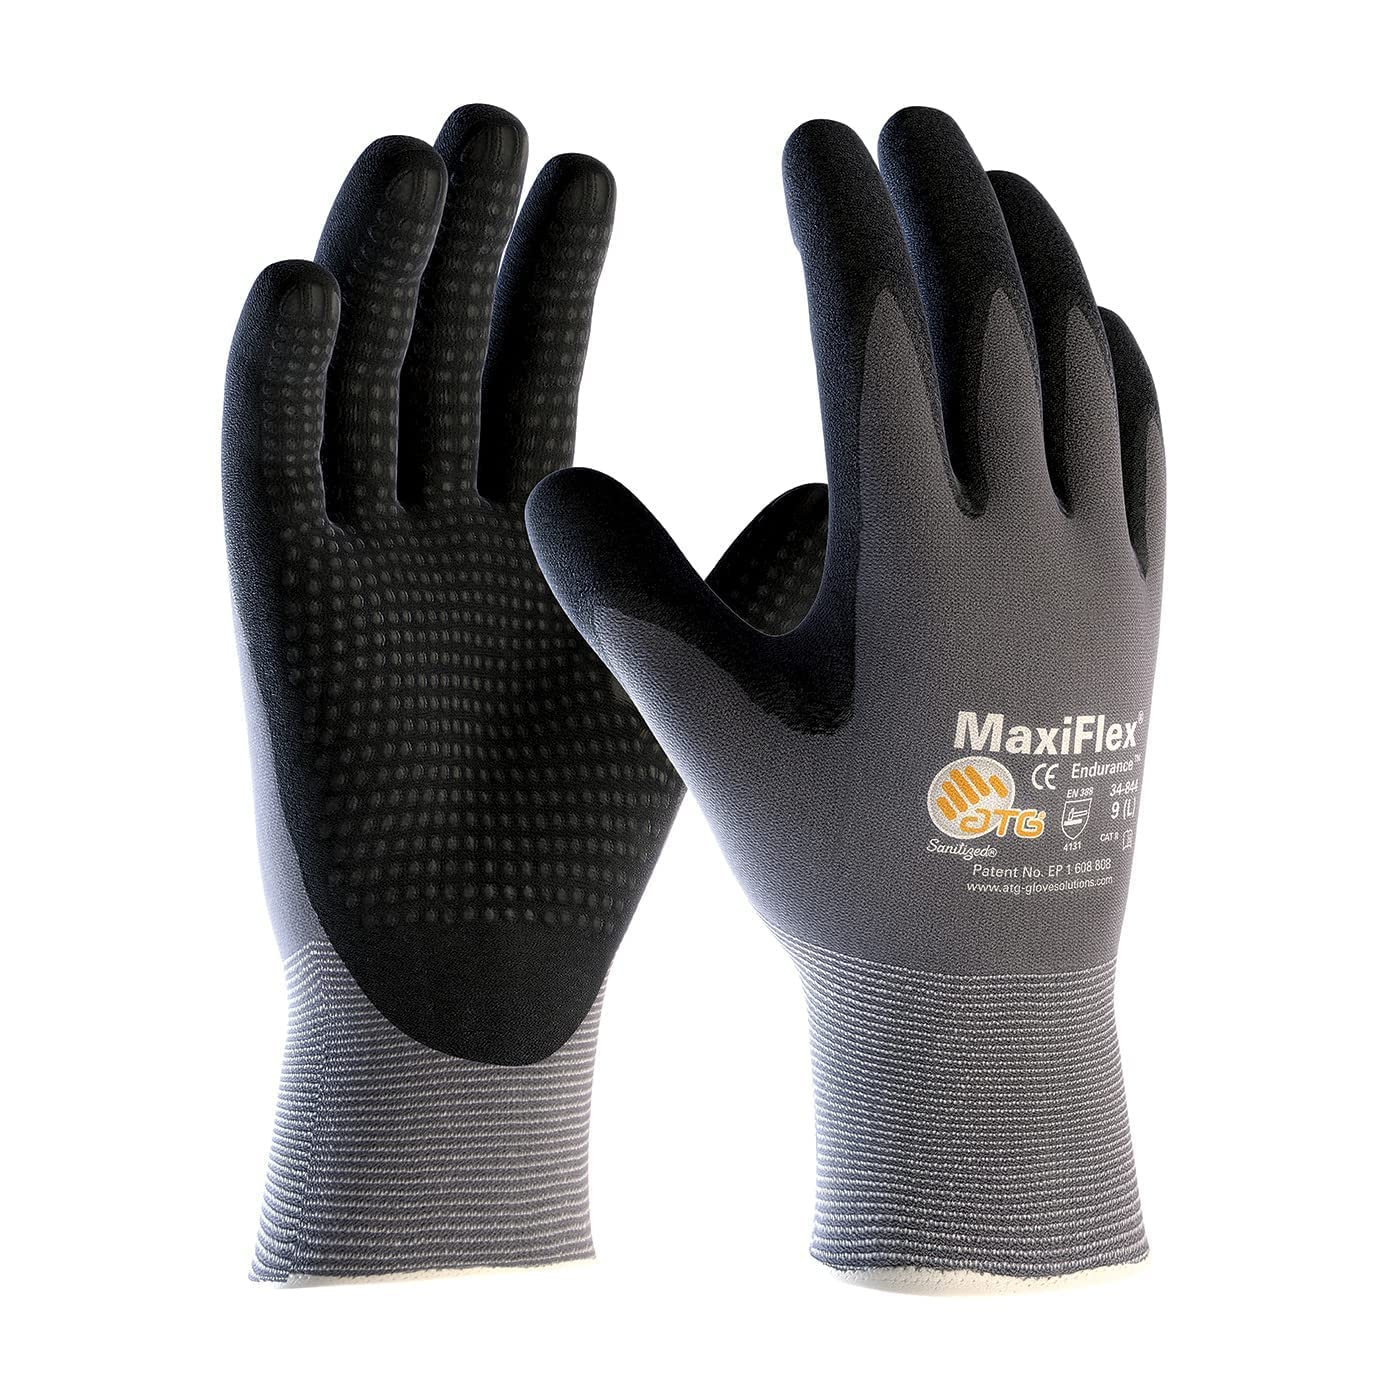 ATG Pacote com 3 luvas de trabalho MaxiFlex Endurance 34-844 malha sem costura de nylon com aderência revestida de nitrilo na palma e dedos